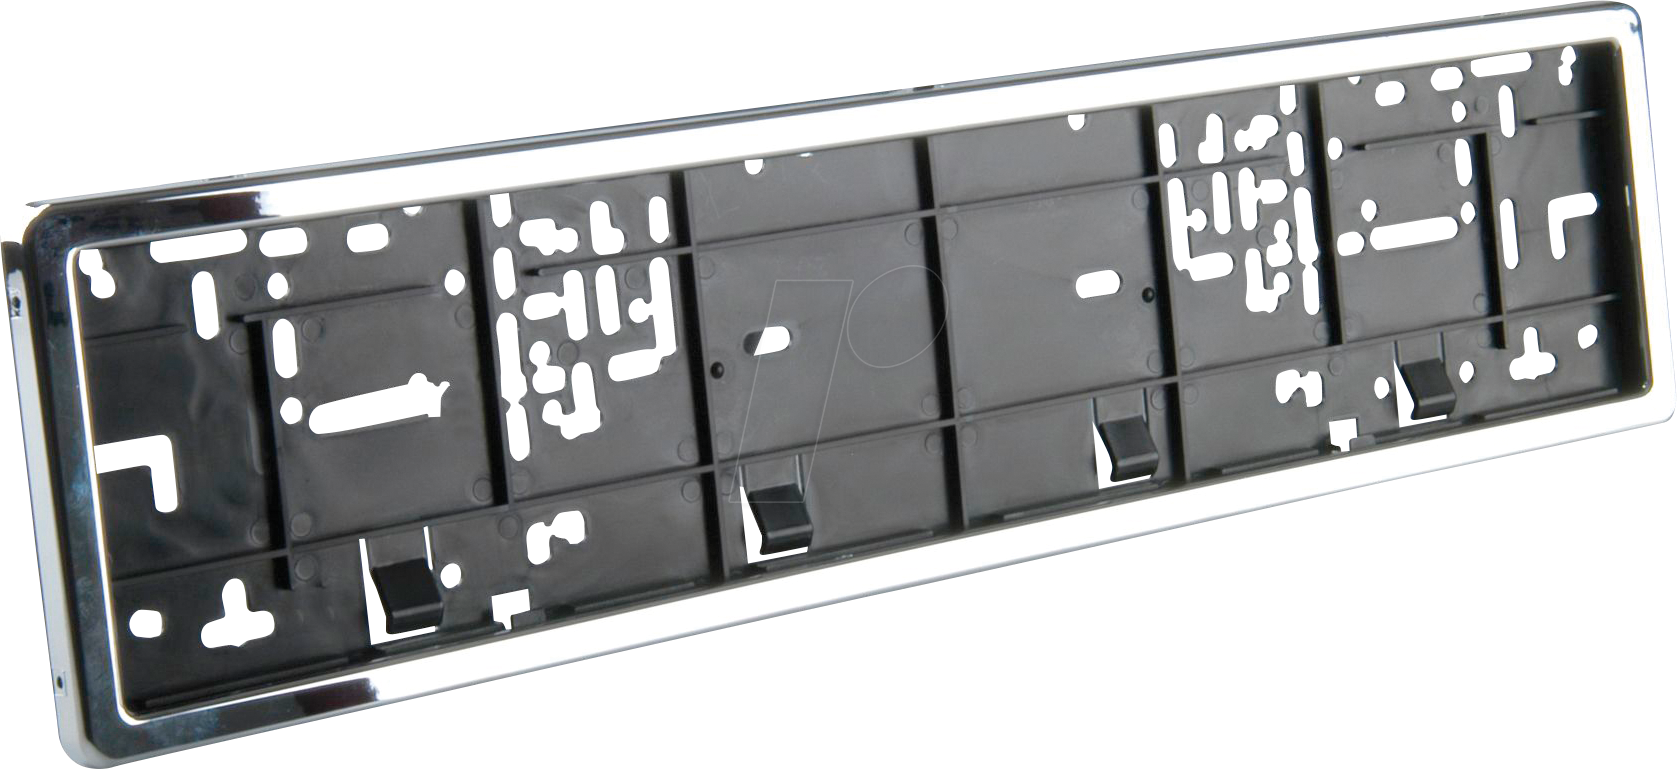 KFZ 012052: KFZ - Kennzeichenhalter, Chrom bei reichelt elektronik